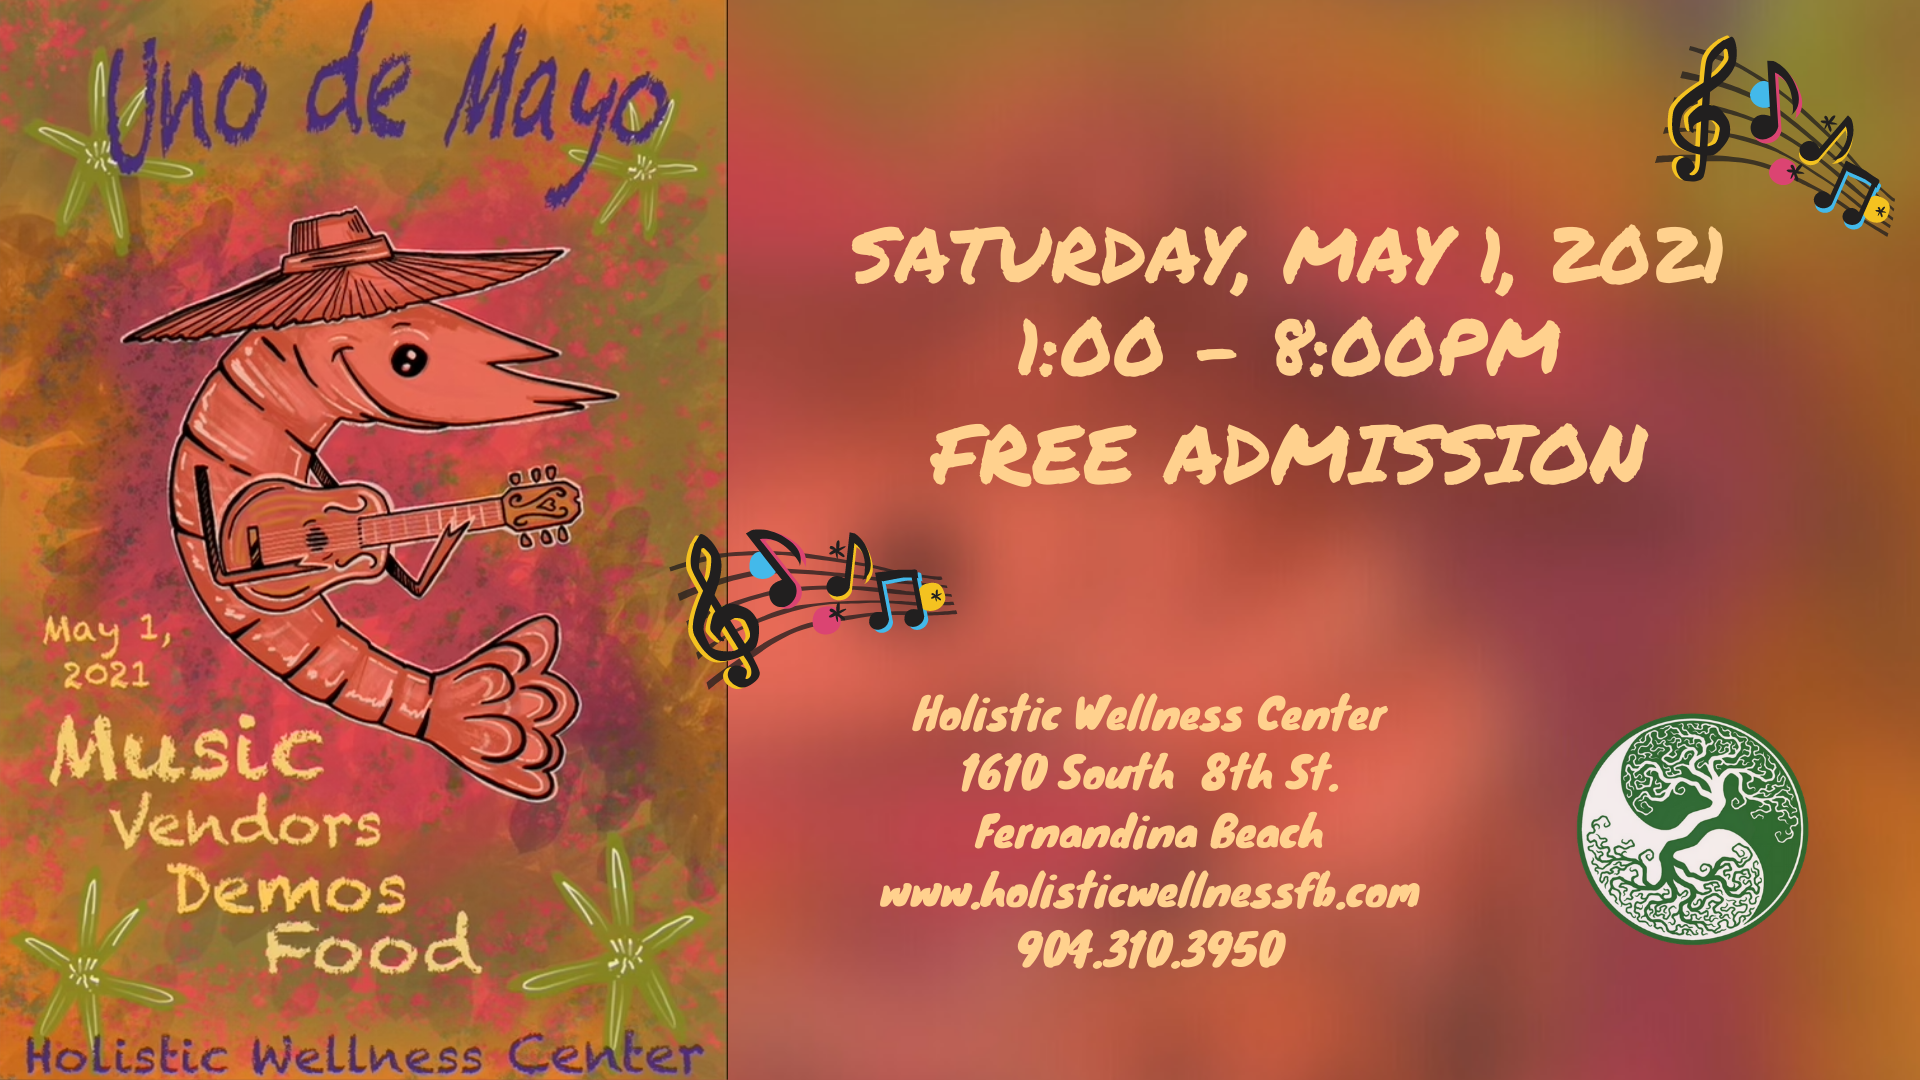 Uno De Mayo Festival Next Saturday, May 1!